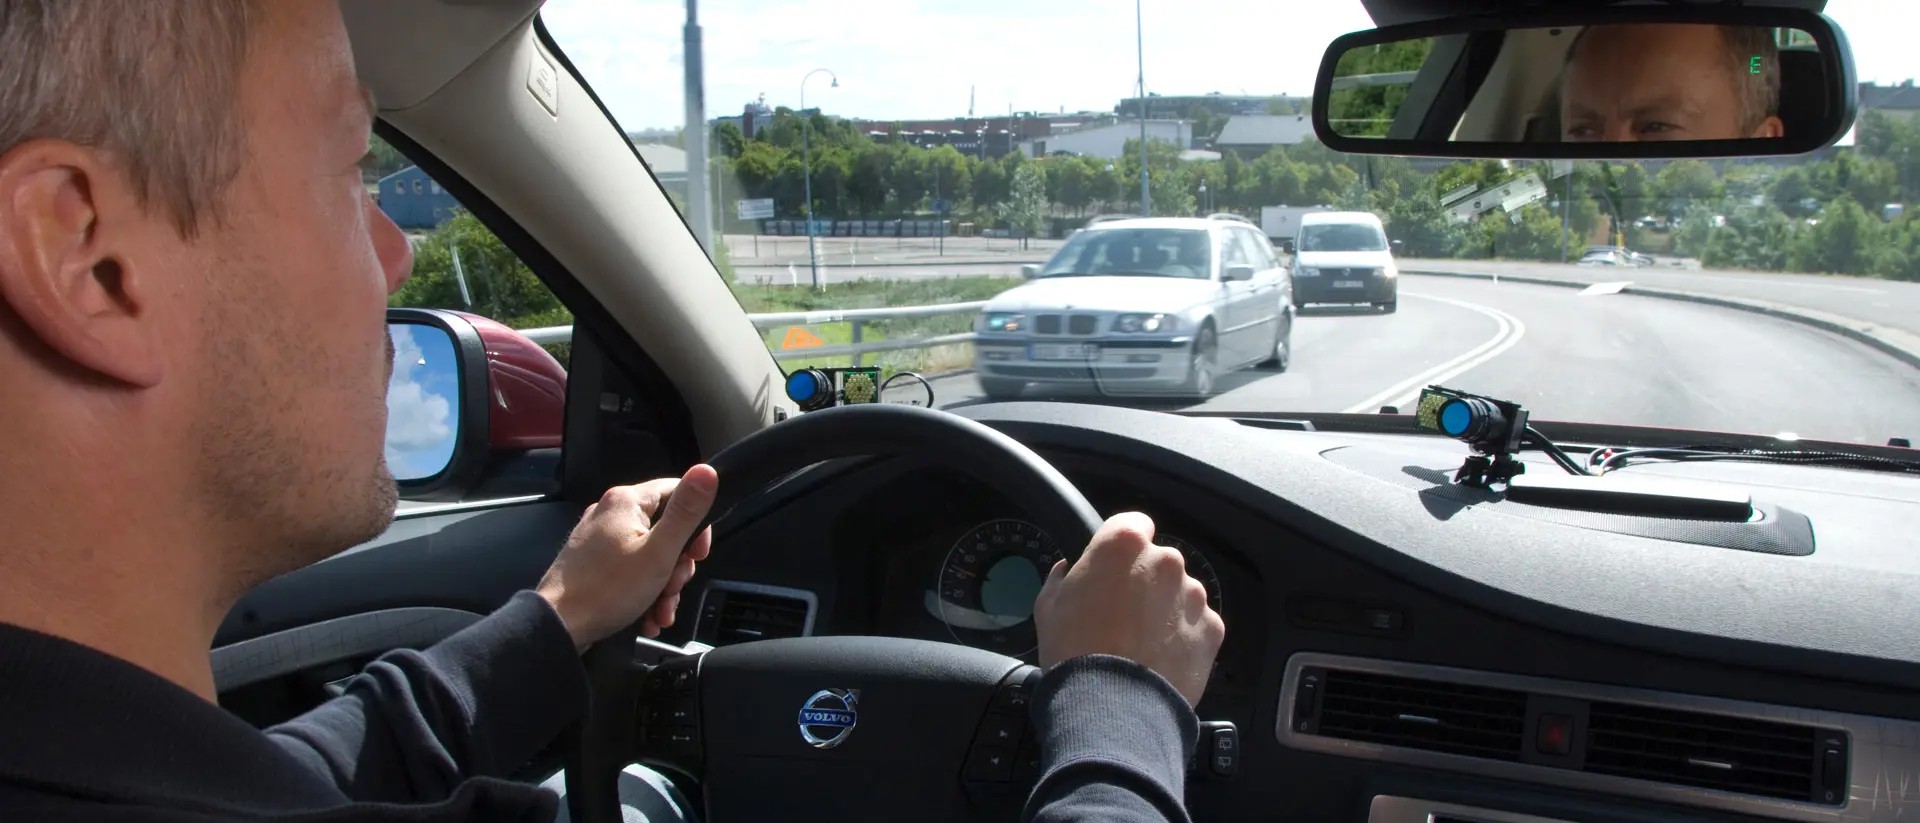 Trafiksäkerhetsforskning hos Safer - registrering av förarens agerande under färd